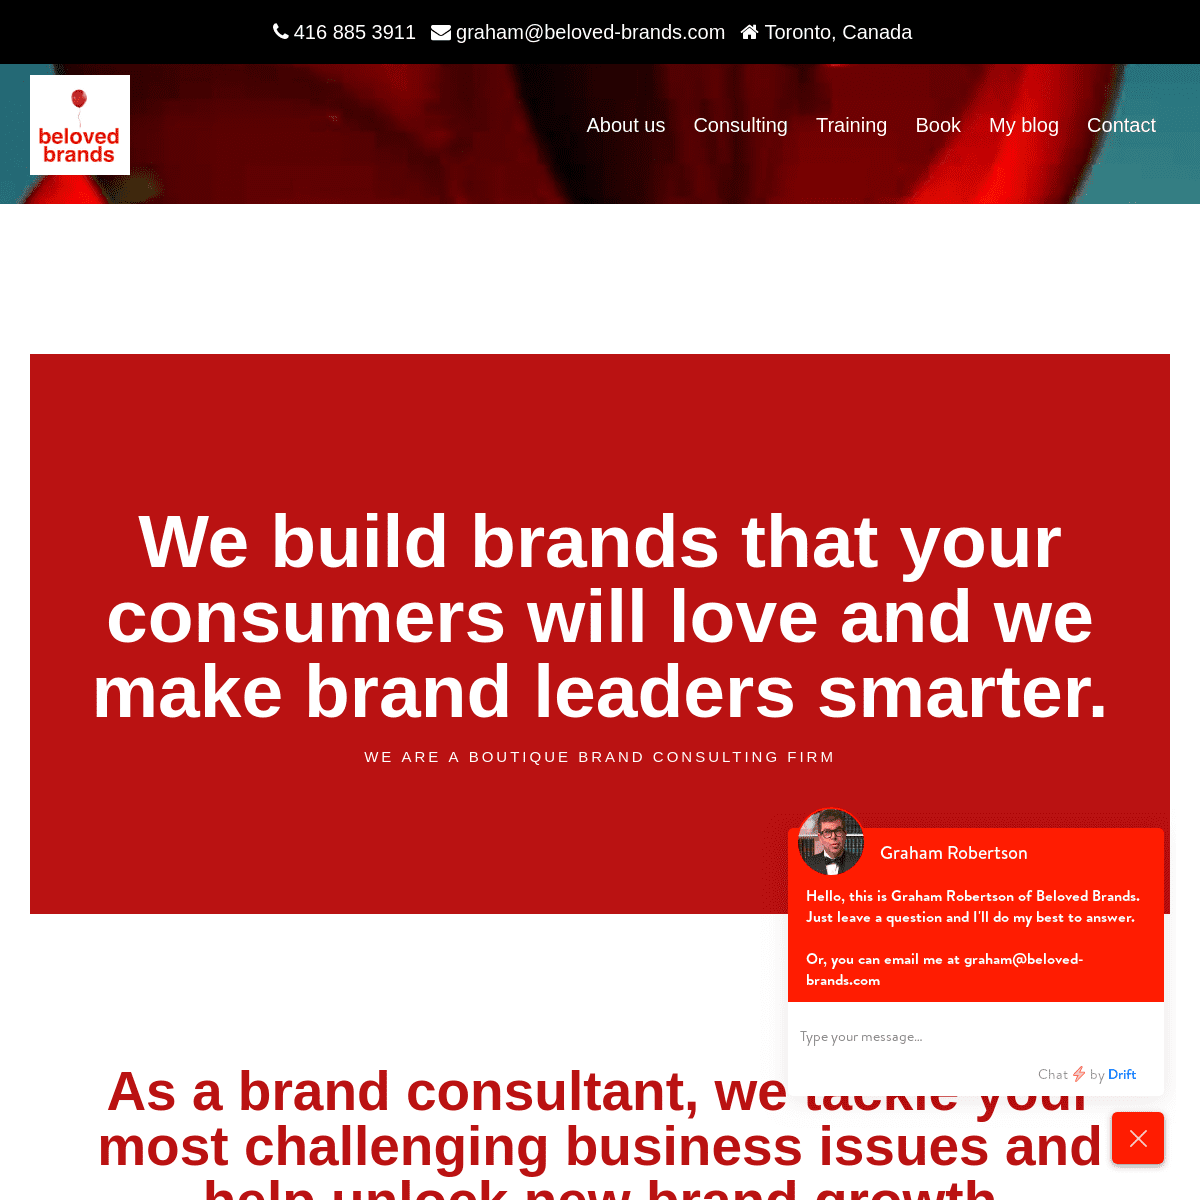 A complete backup of beloved-brands.com